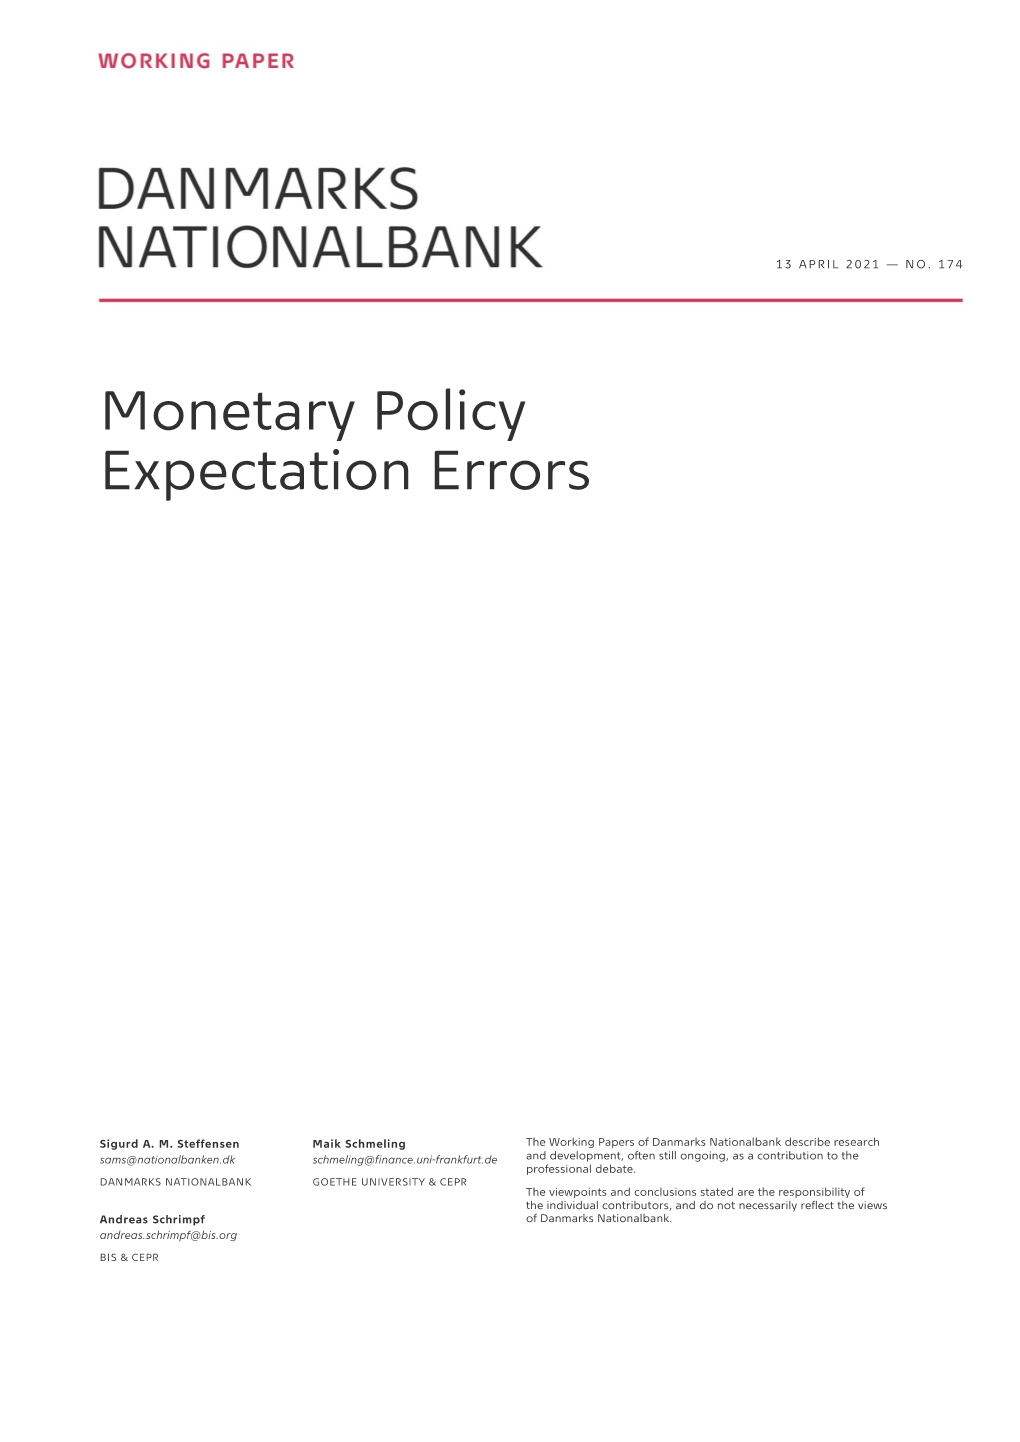 Monetary Policy Expectation Errors